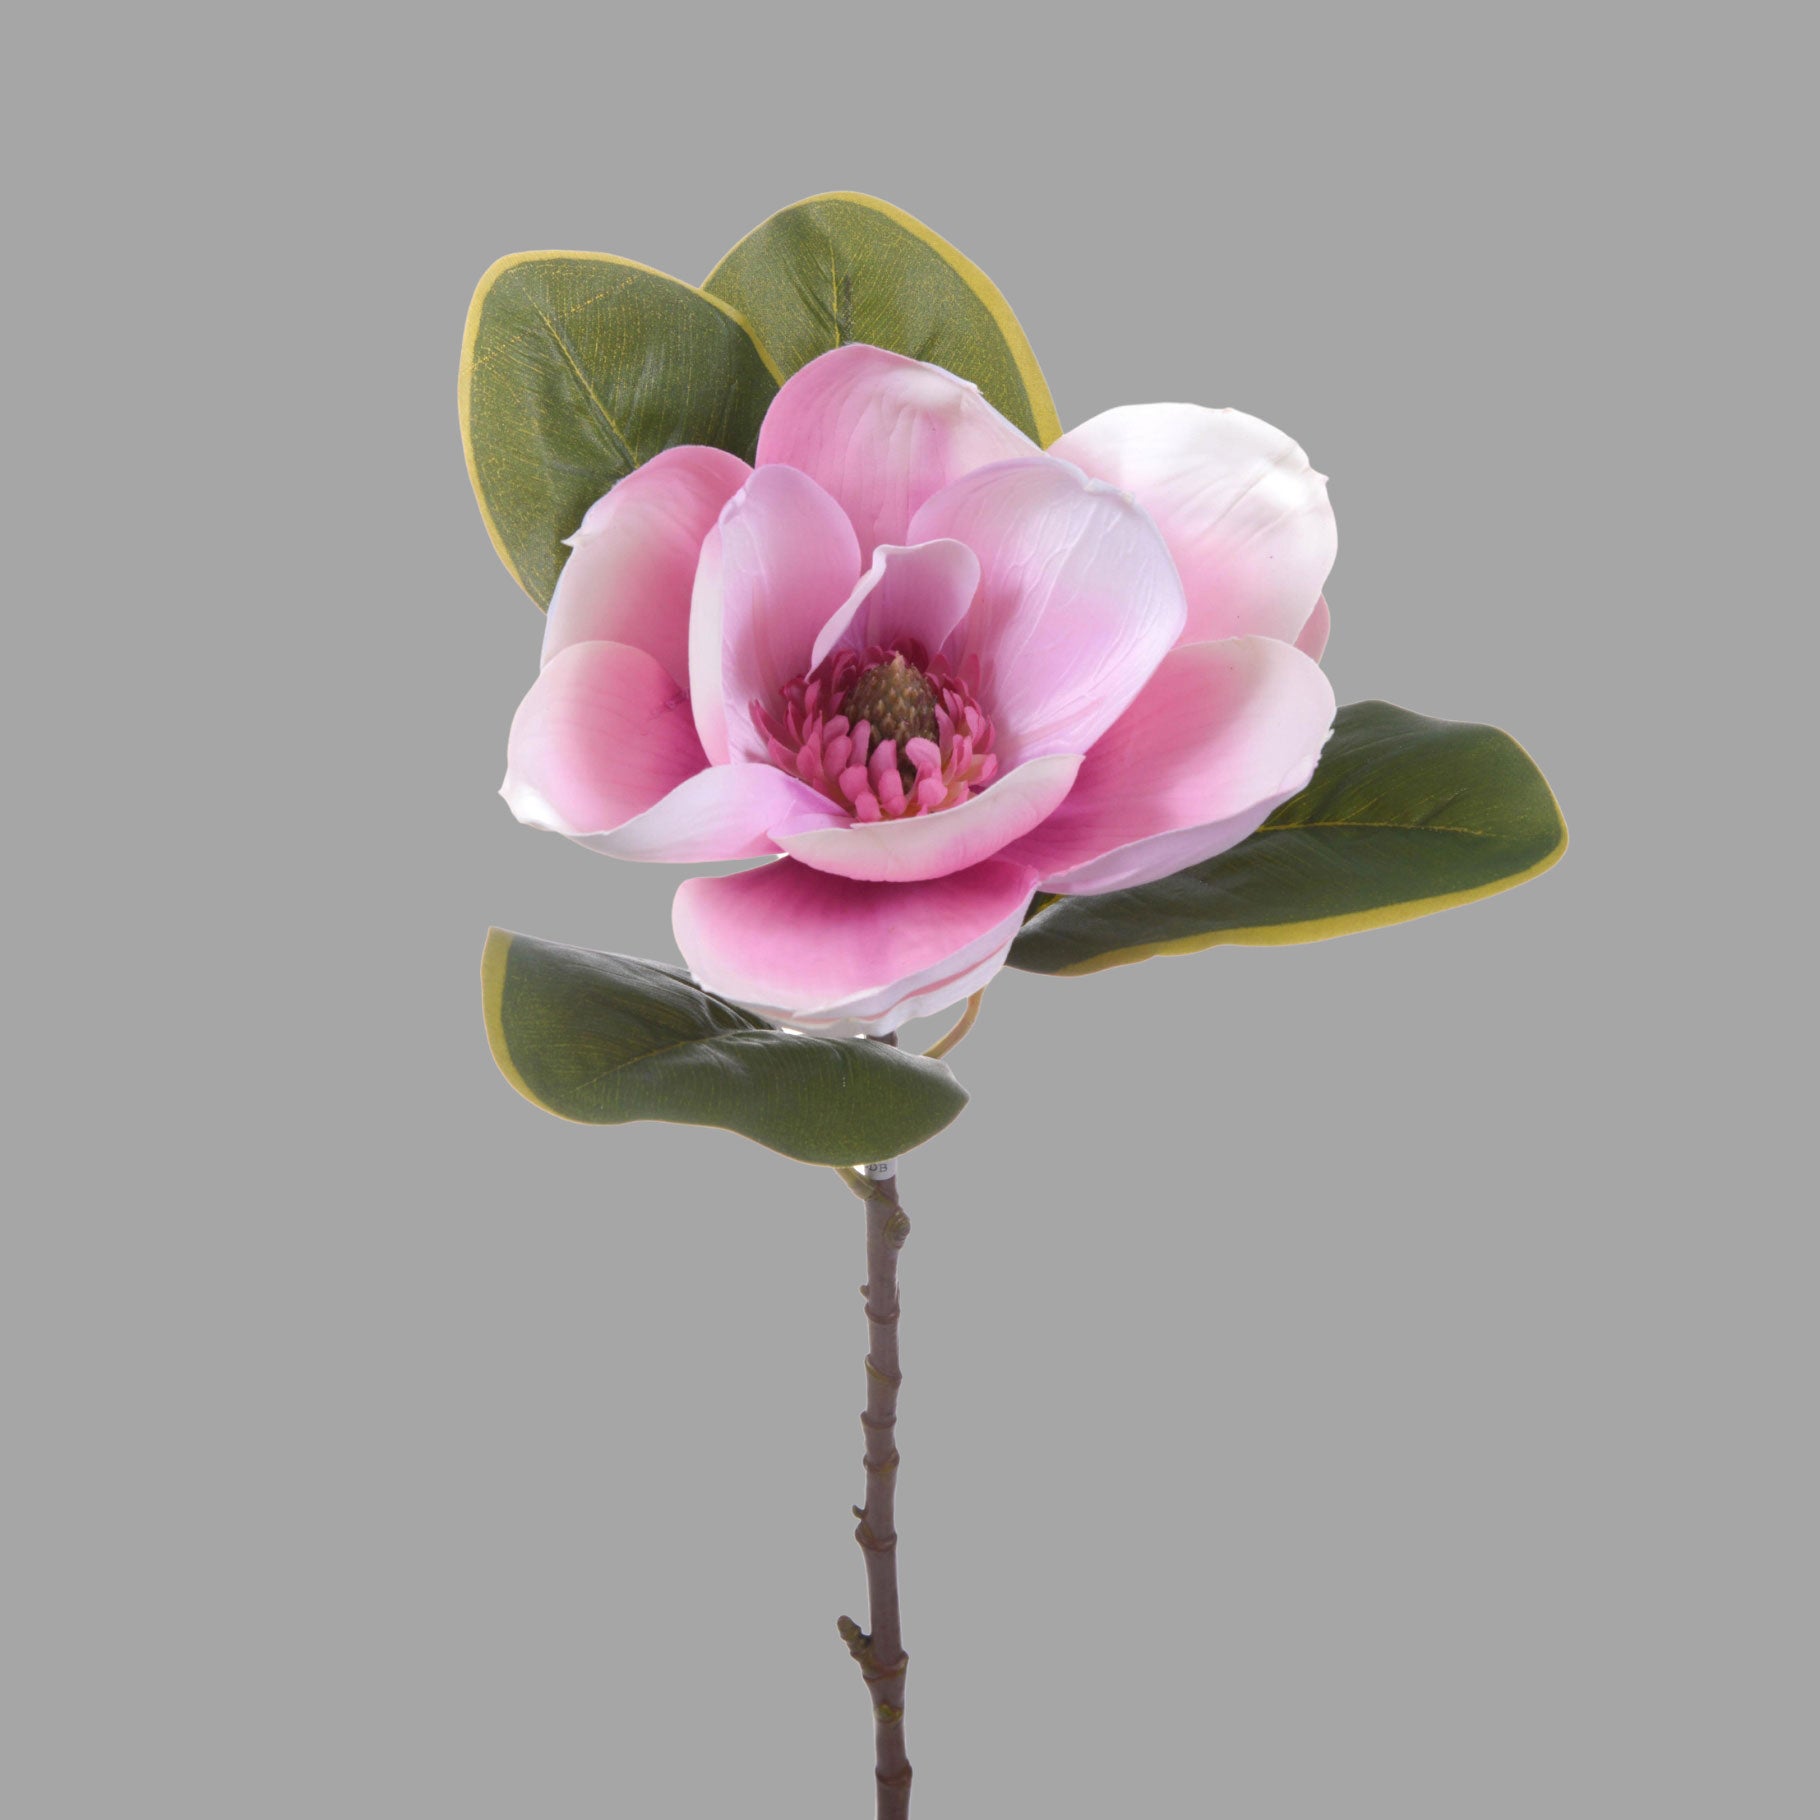 Virágzó mű magnólia ág, egy darab pink színű nyílt virággal